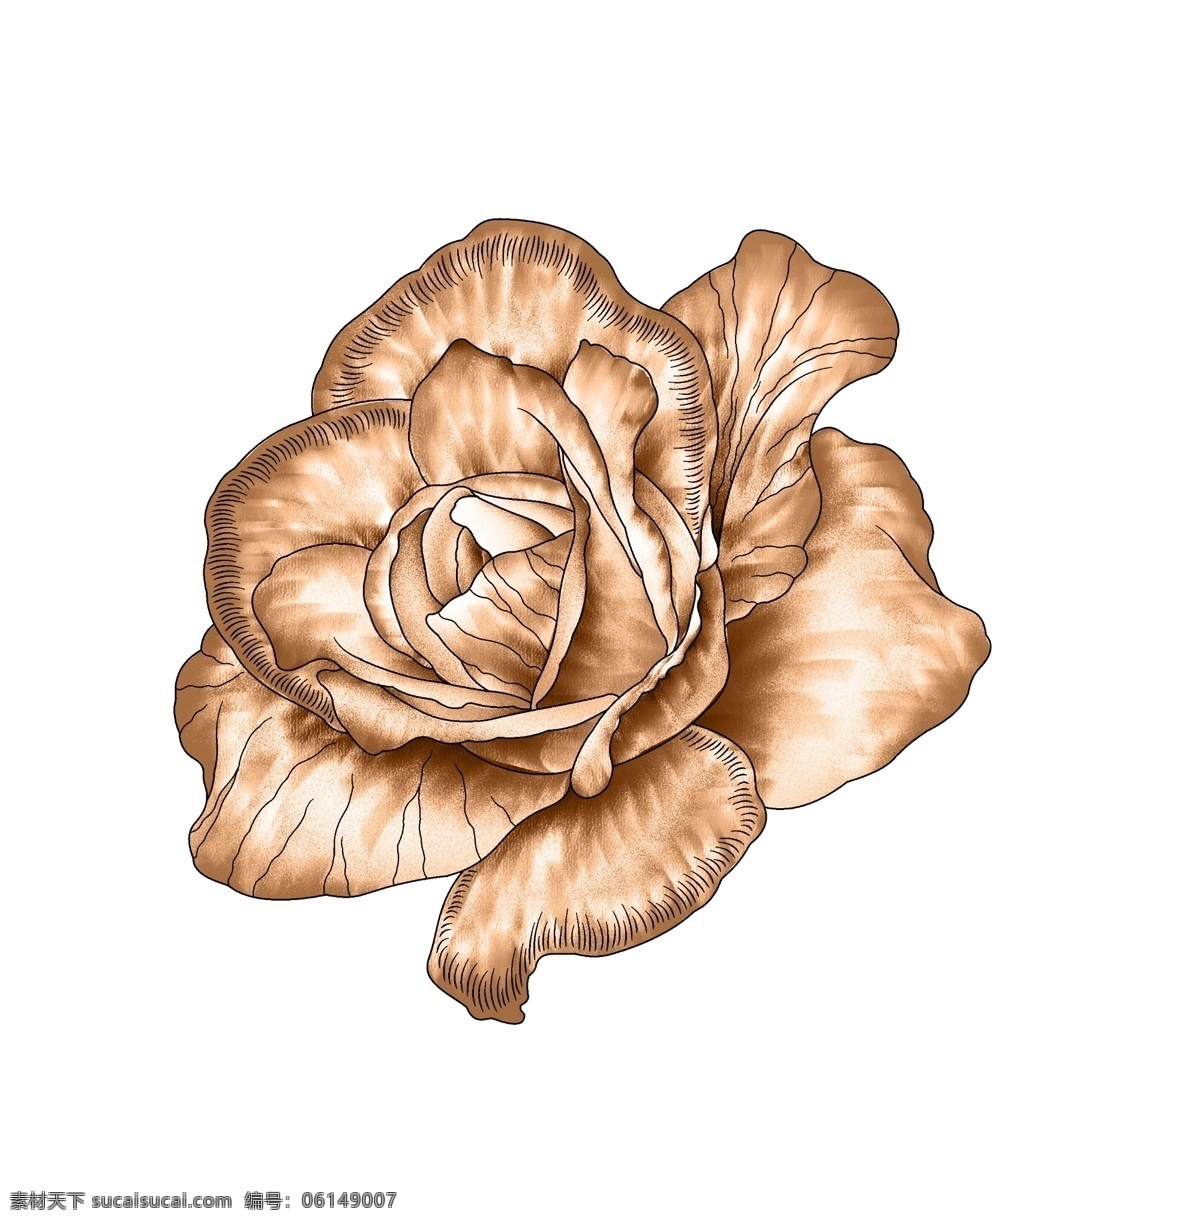 手绘花卉 花卉 印花素材 服装图案素材 家纺图案素材